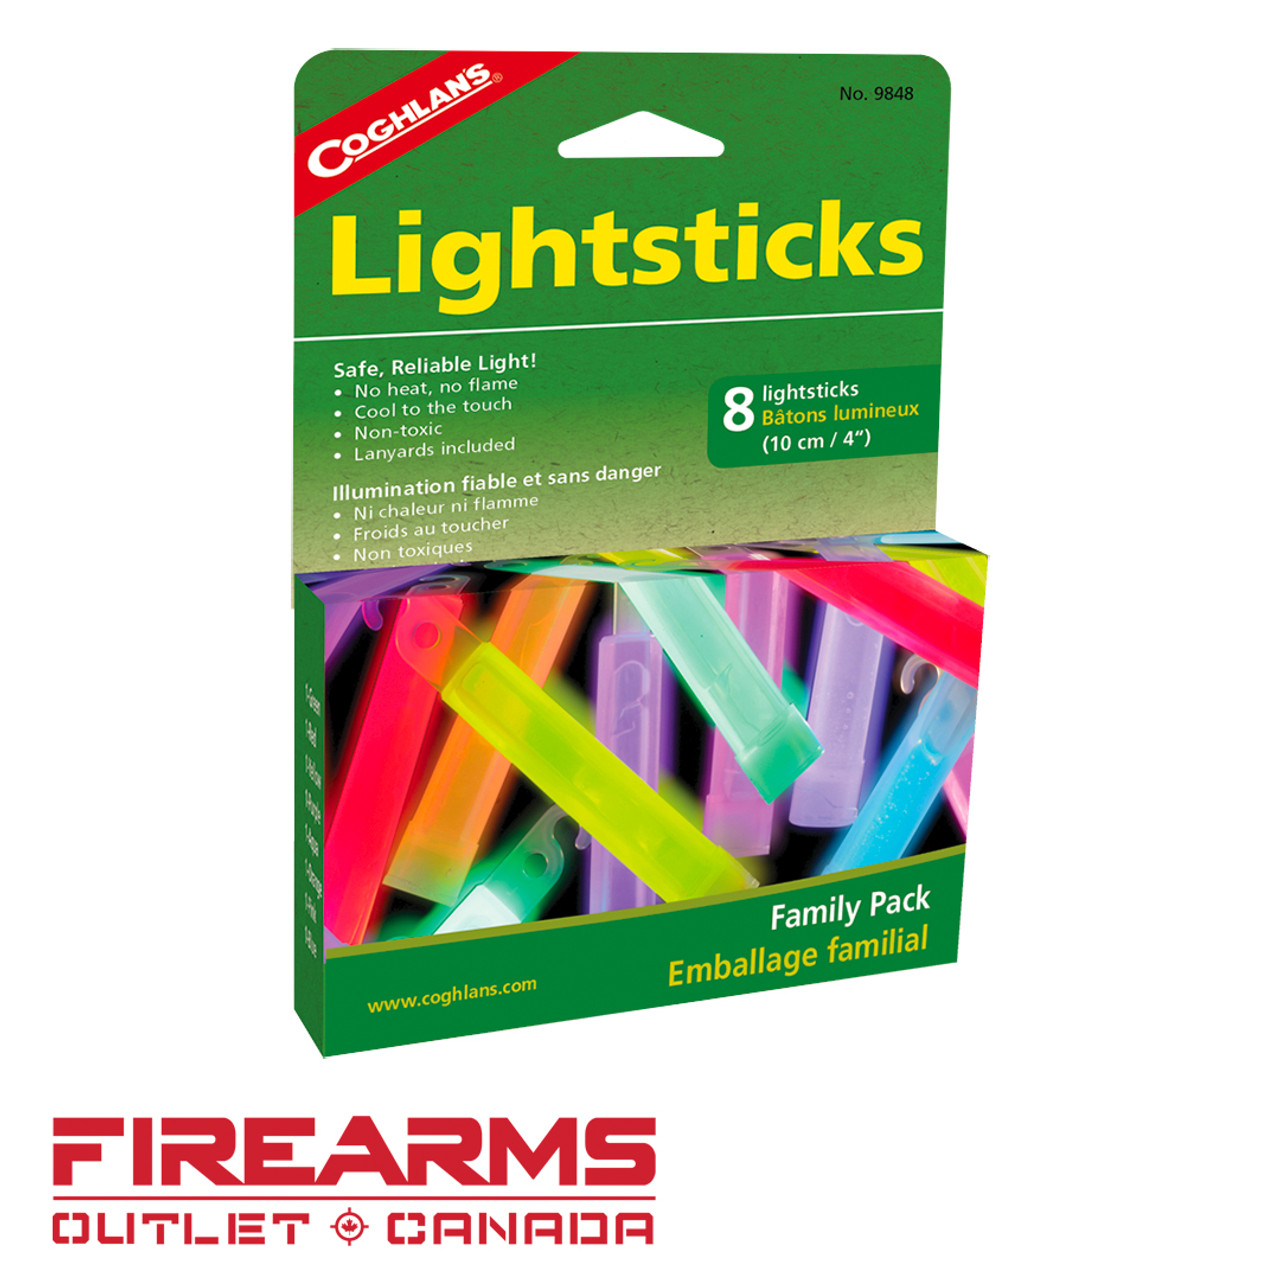 Coghlan's 4" Lightsticks (Family Pack) - 8 Pack [9848]